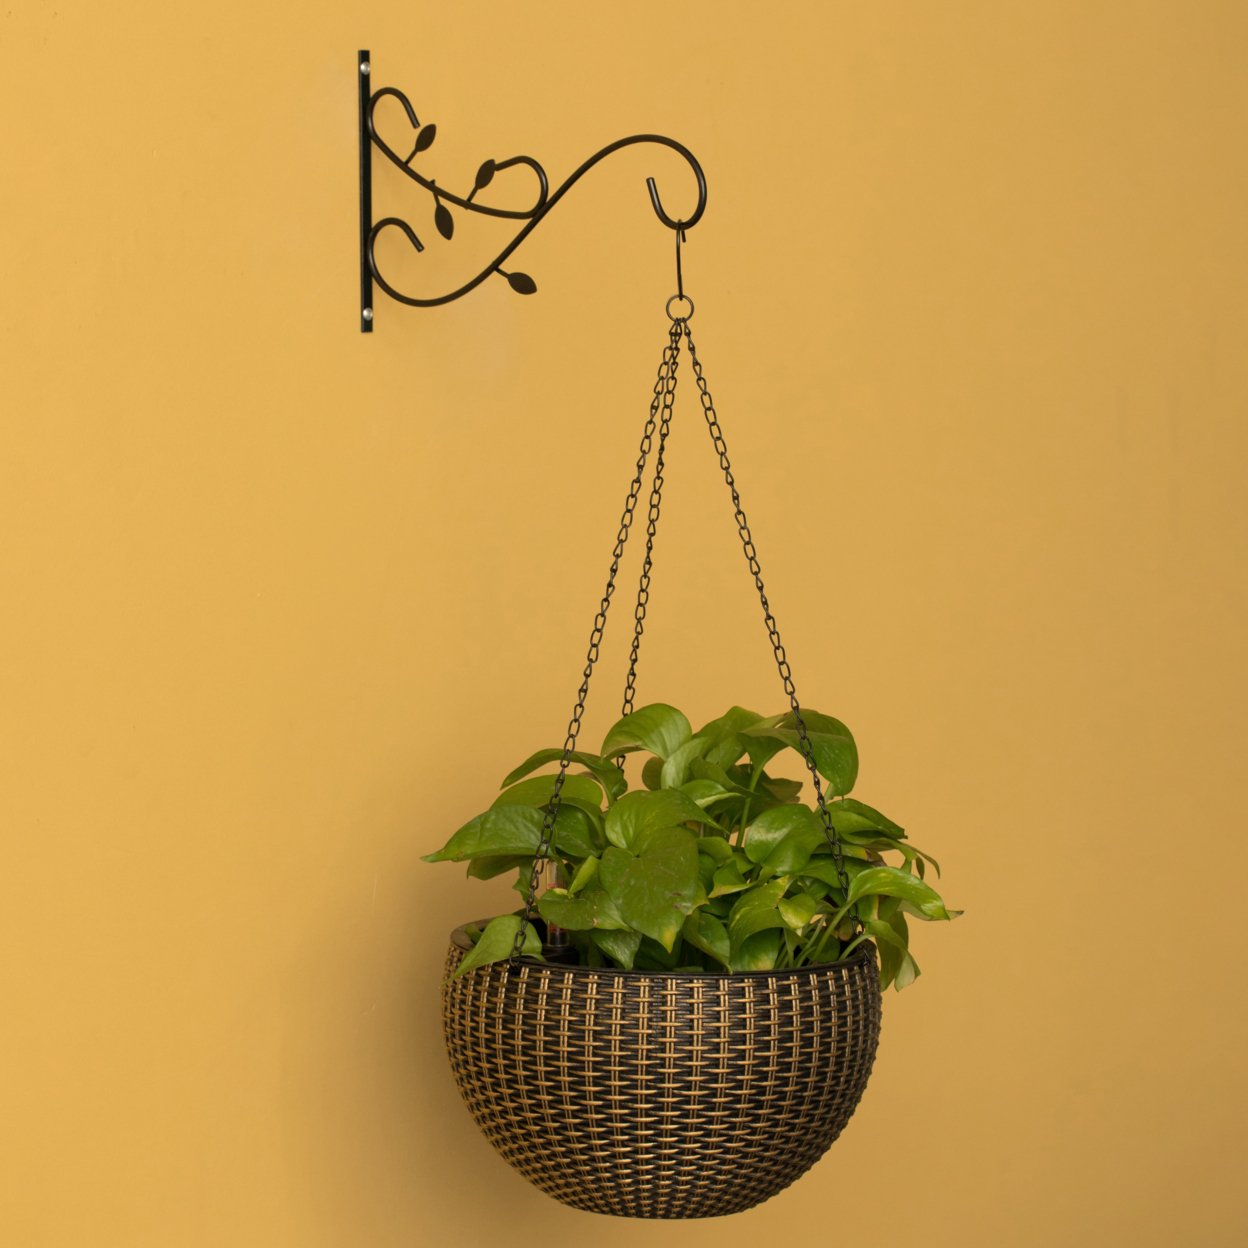 Decorative Metal Wall Mounted Hook For Hanging Plants, Bracket Hanger Flower Pot Holder, 2 Pack